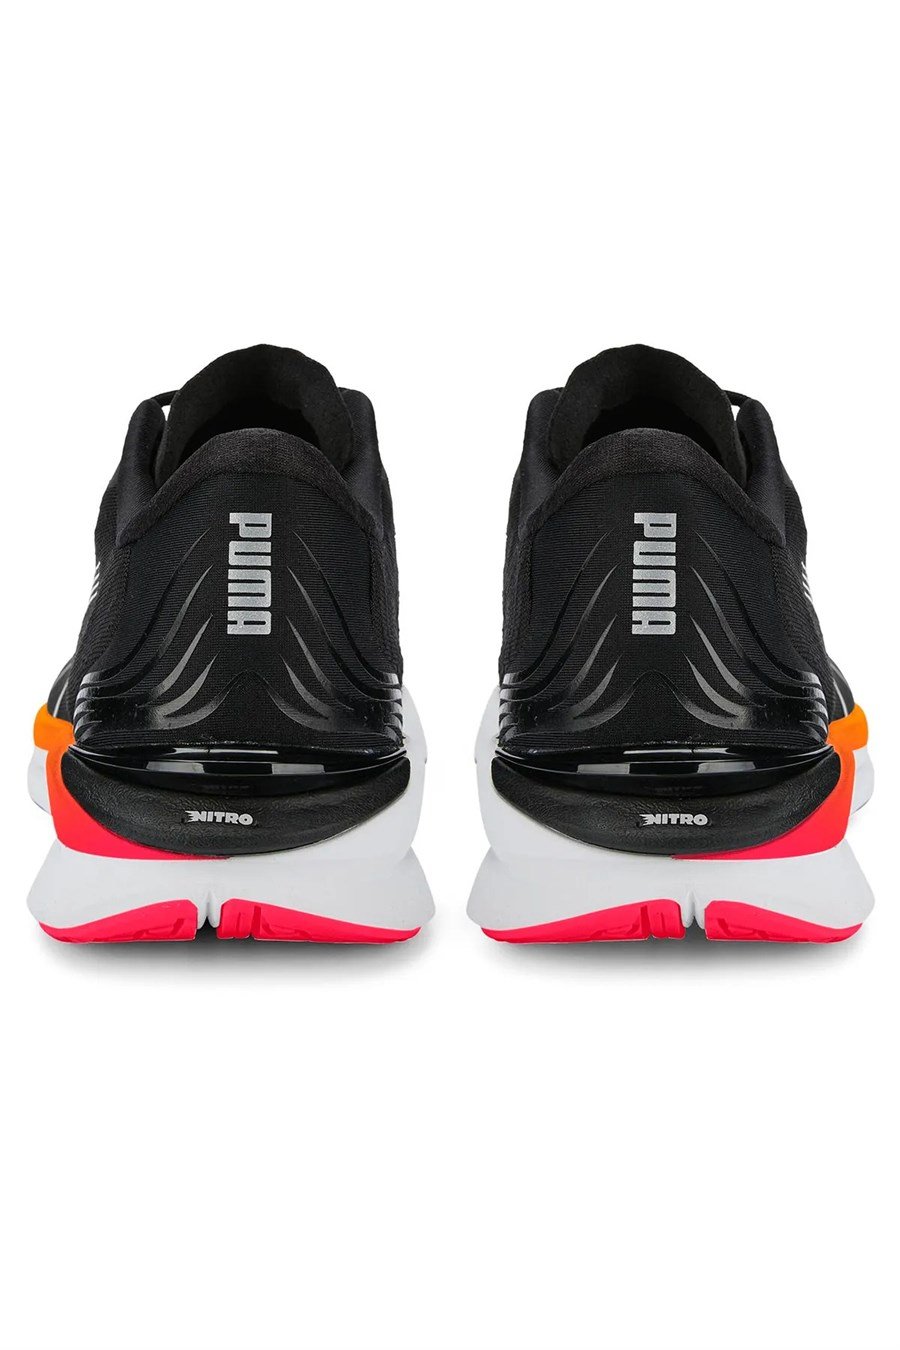 Puma 37681407 Electrıfy Nıtro 2 Puma Siyah-Metallıc Sı Erkek Kosu Ayakkabısı